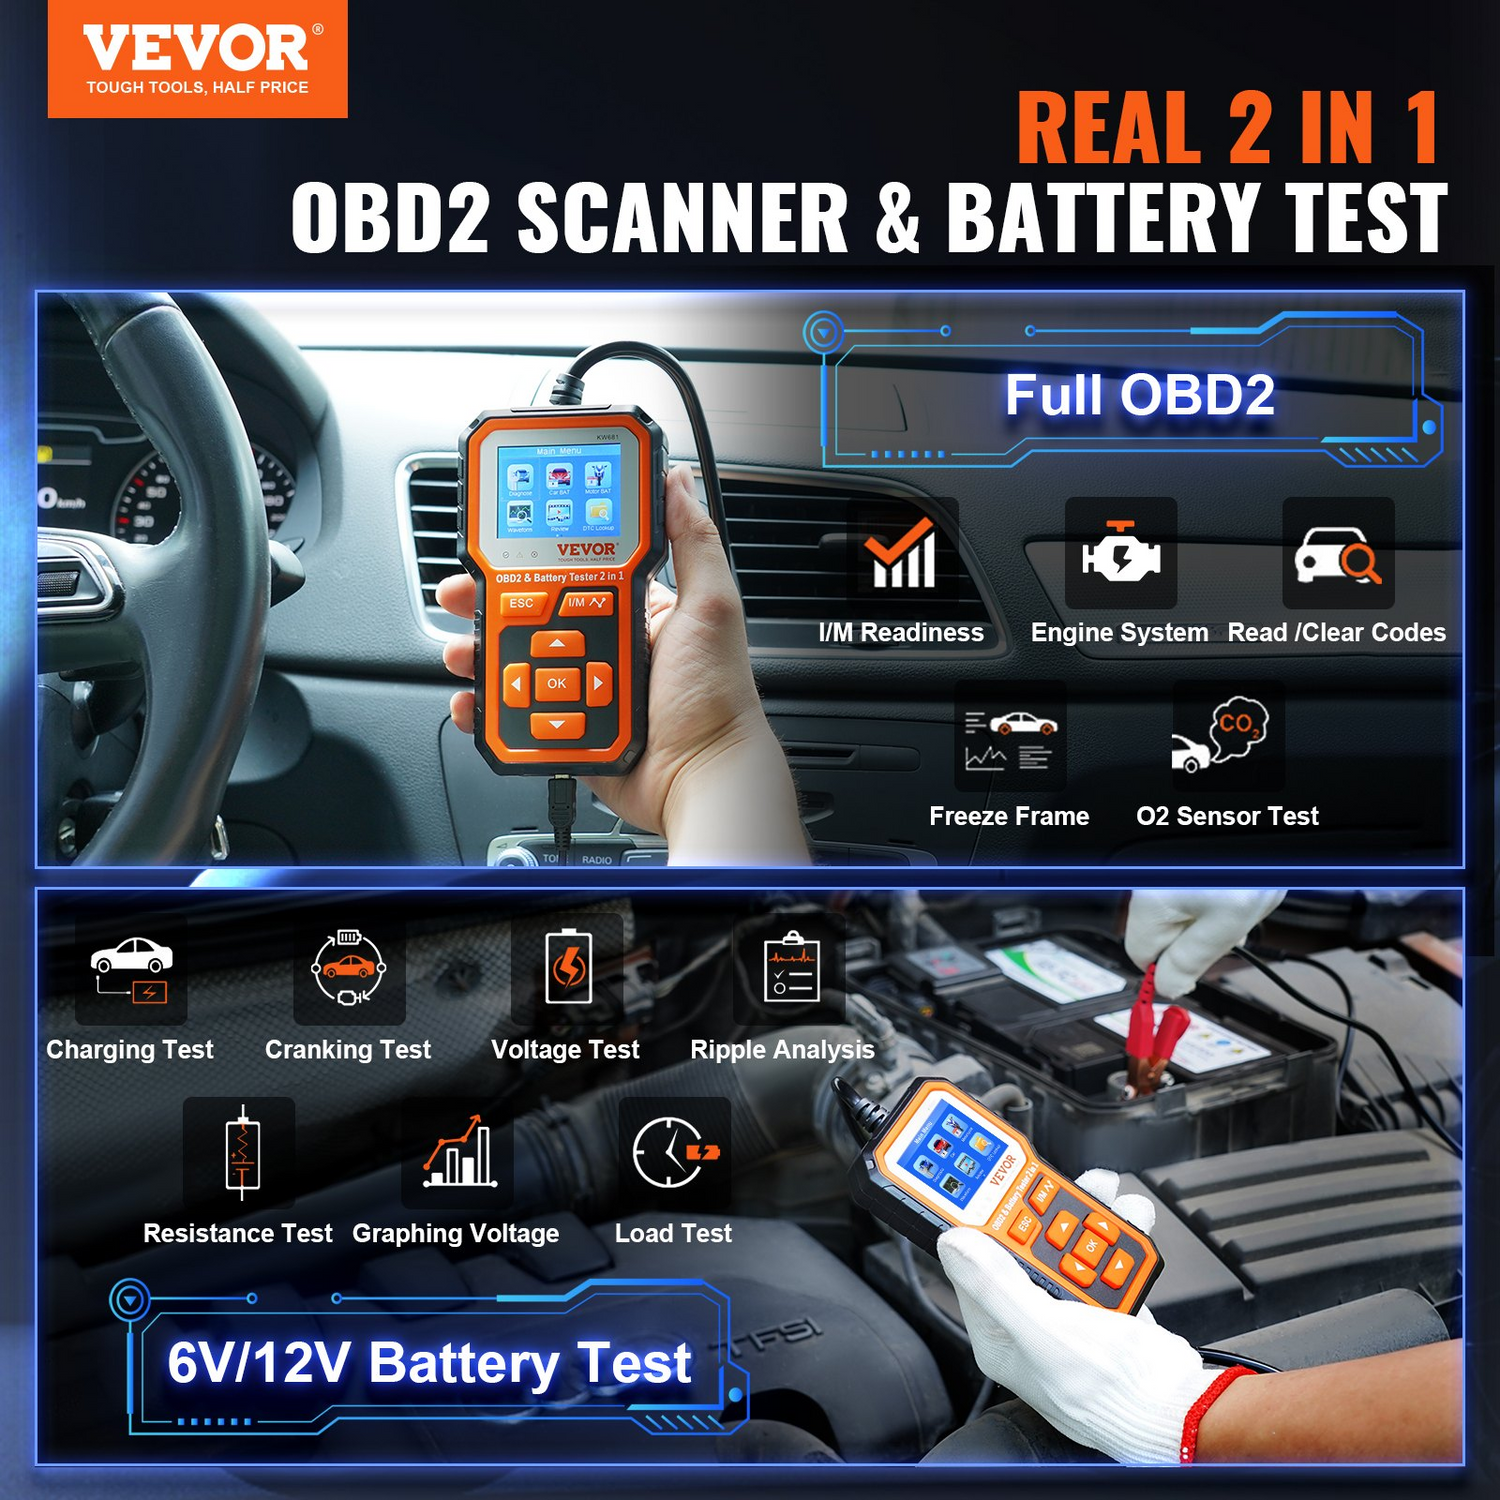 VEVOR OBD2 Scanner Battery Tester 6V/12V - Upgrade 2 IN1 OBD Scanner Diagnostic Tool Car 100-2000 Battery Charging Cranking System Test Car Code Reader Scan Tool for All OBDII Protocol Cars Since 1996, Goodies N Stuff